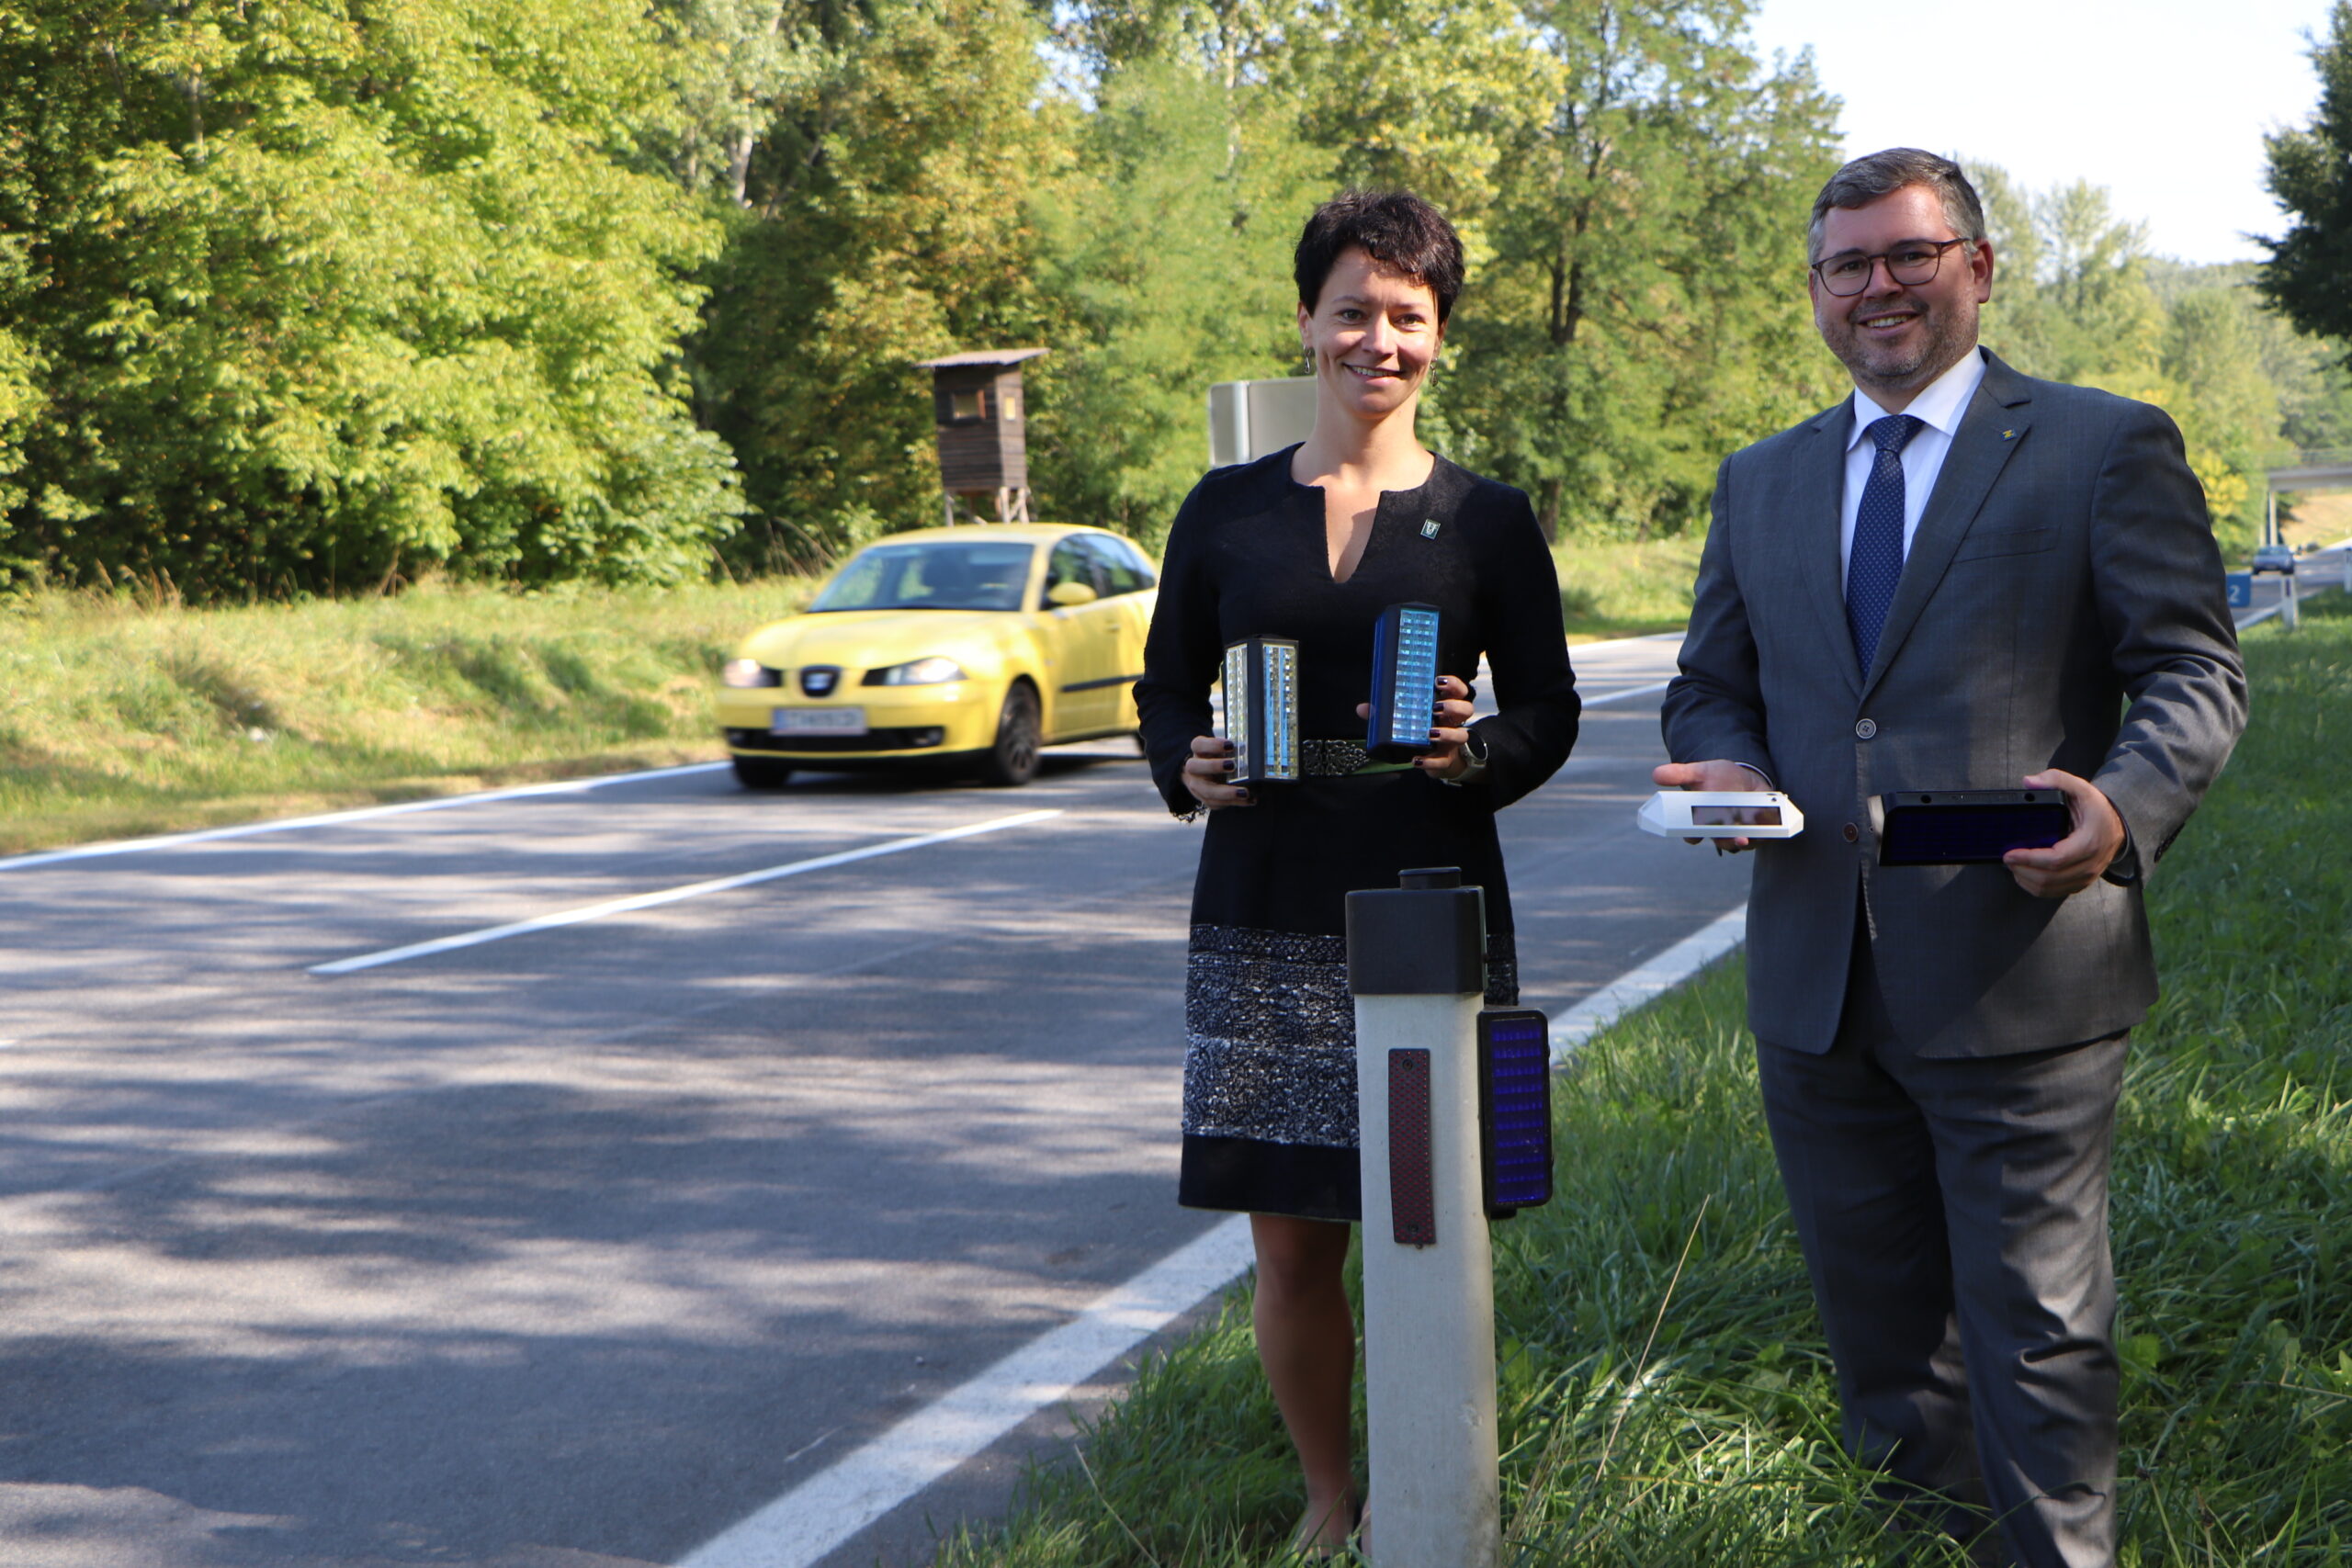 7.100 neue Wildwarngeräte sichern zukünftig vor Verkehrsunfällen -  Niederösterreichischer Landesjagdverband